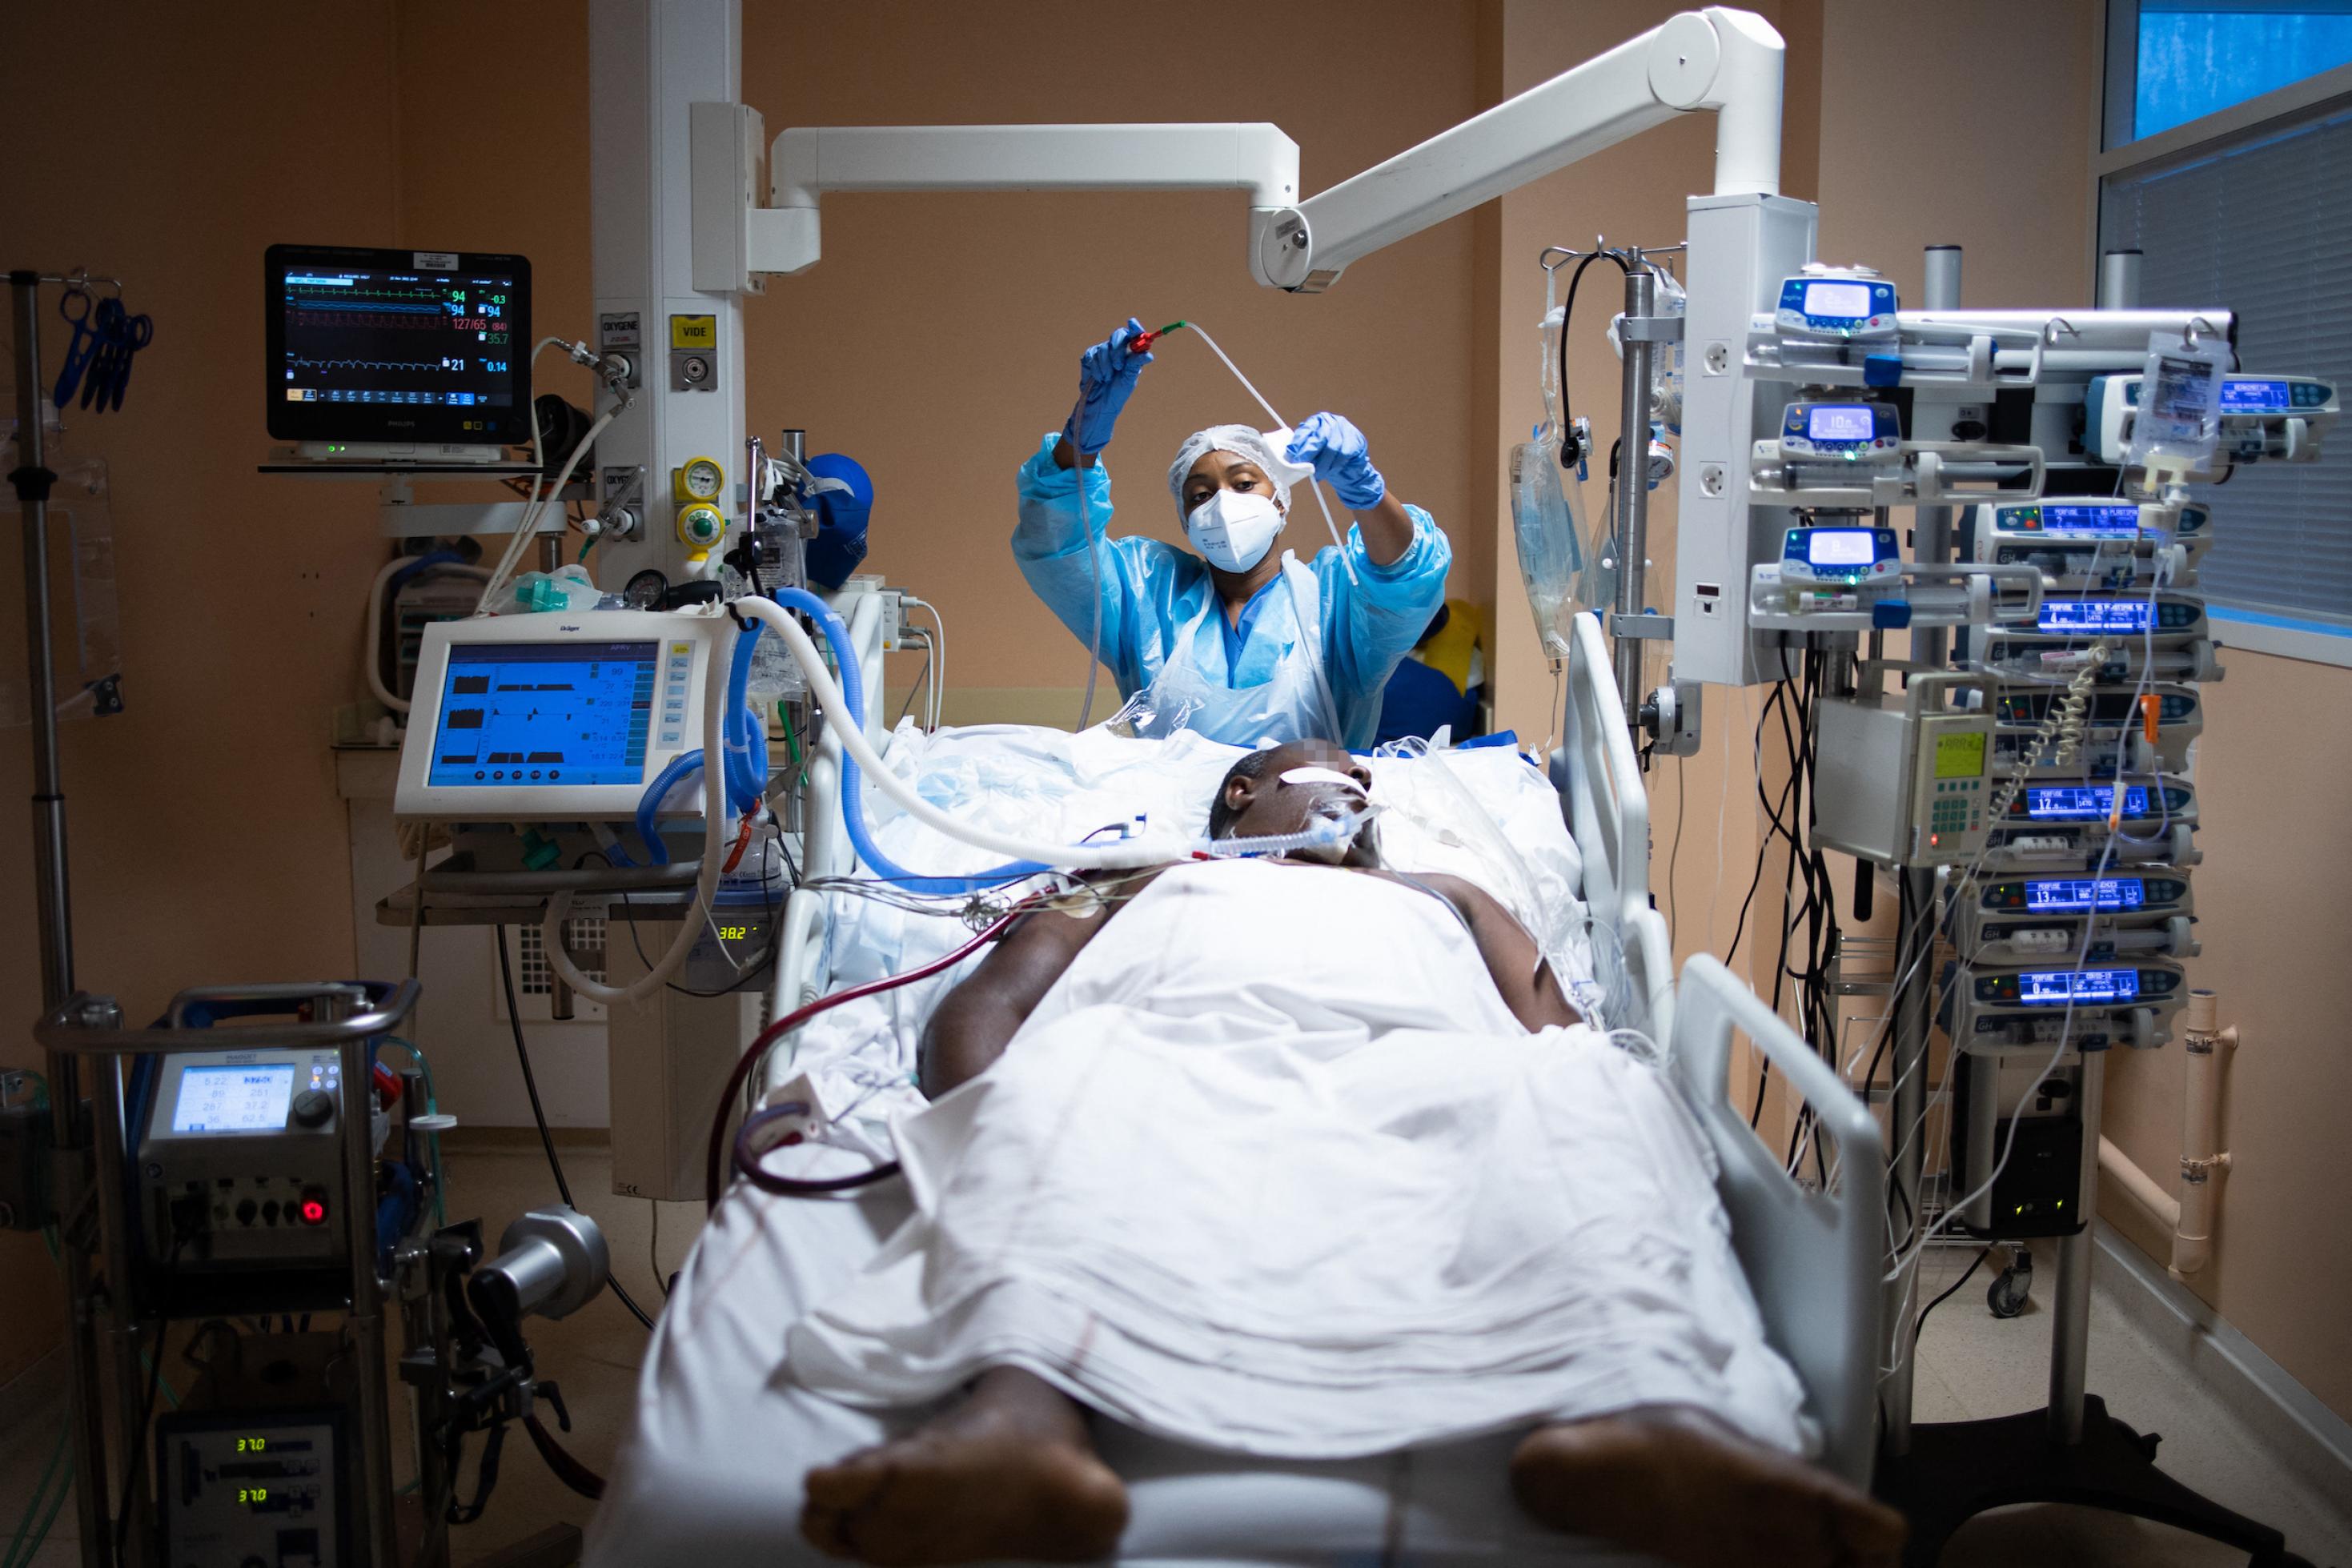 Ein Mann liegt in einem Intensivbett umgeben von medizinischen Geräten, eine medizinische Fachkraft steht am Bett und kümmert sich um ihn.